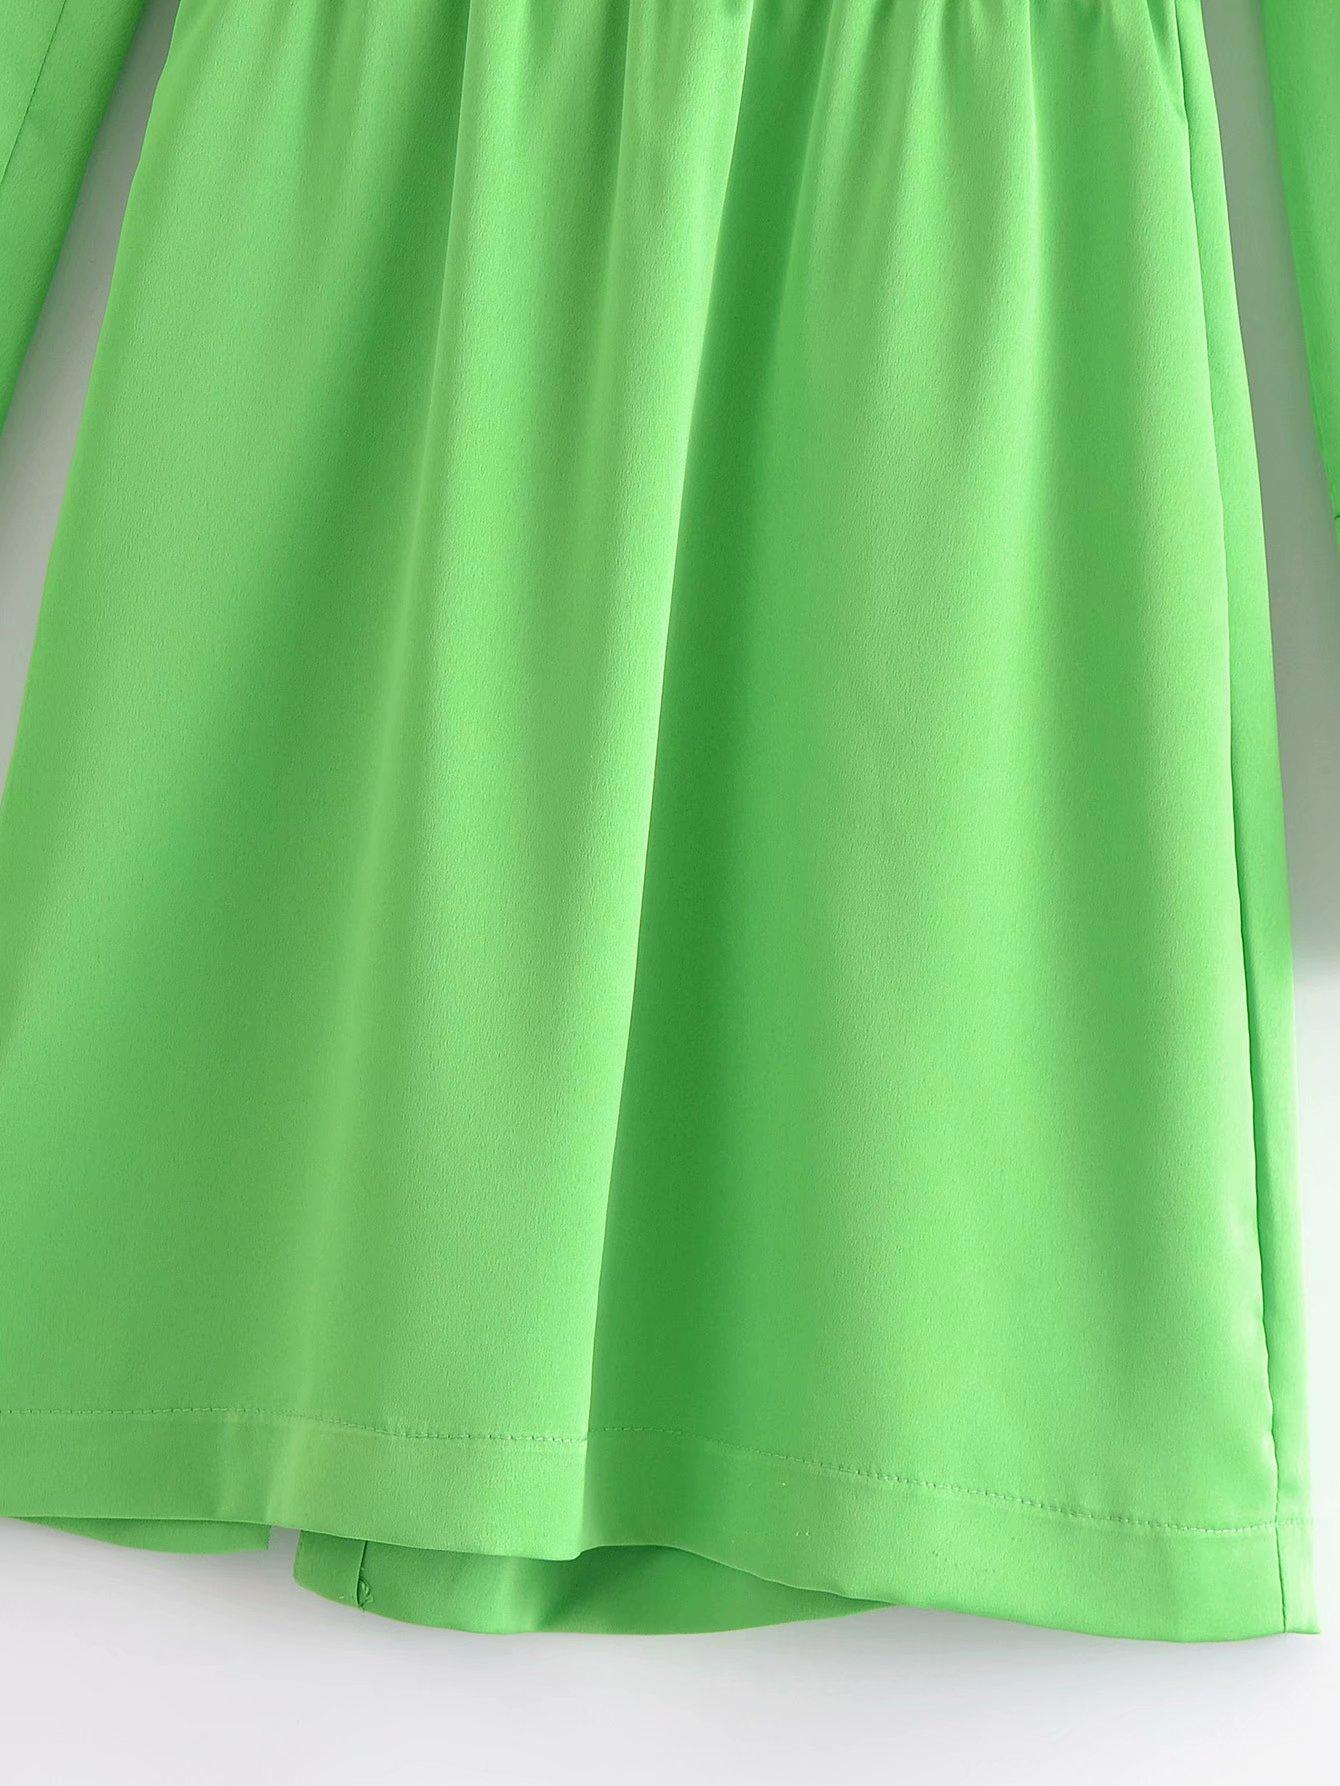 2021 Summer Shirt Dress Women Long Sleeves Casual Fashion Chic Lady Light Green Short Dress Za Women